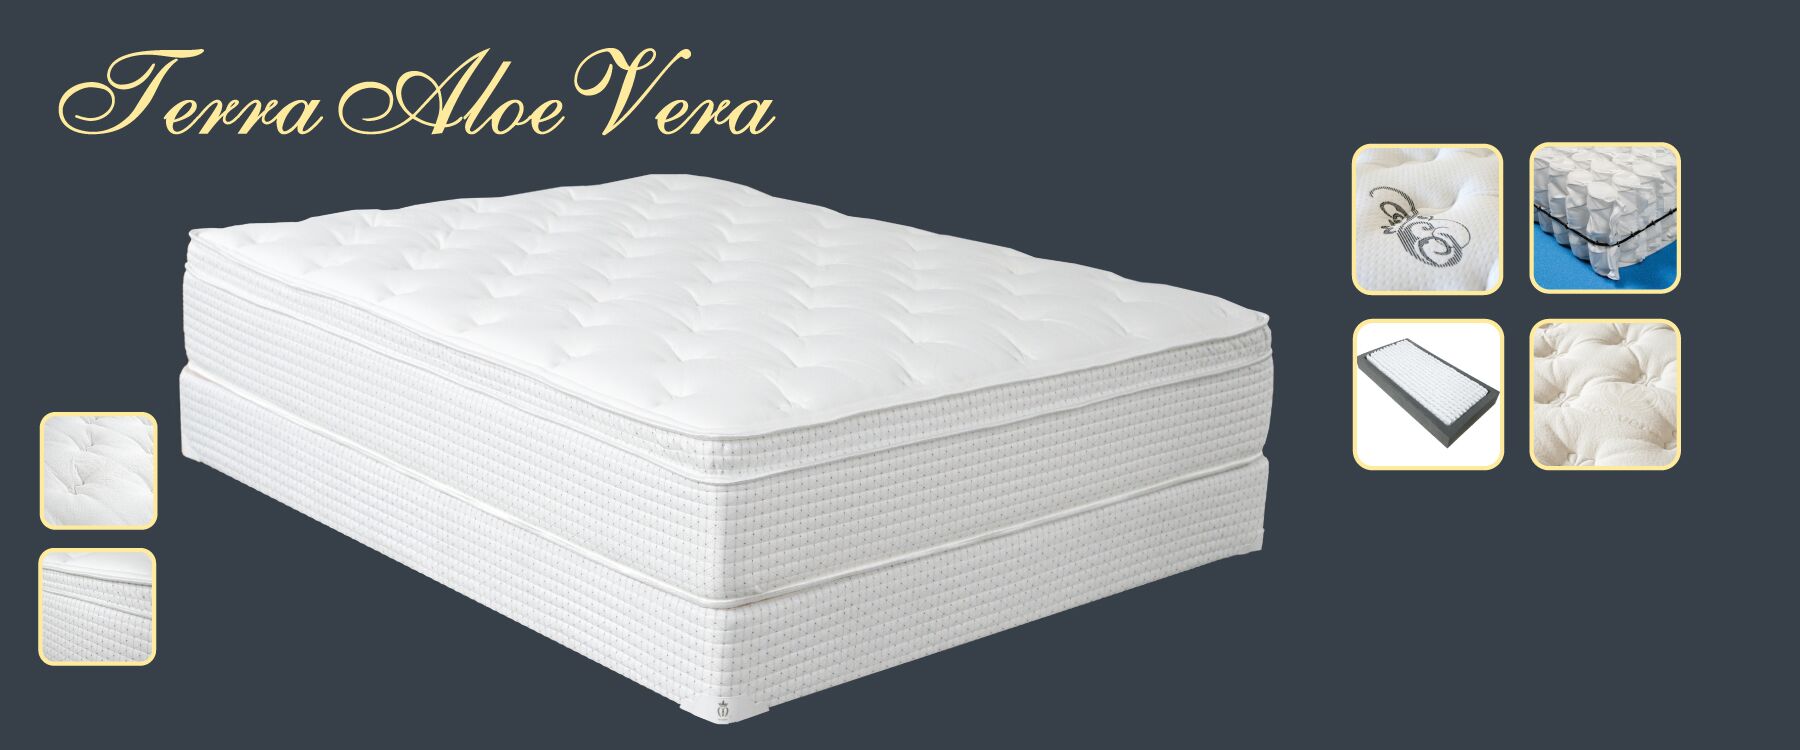 aloe pillow mattress firm